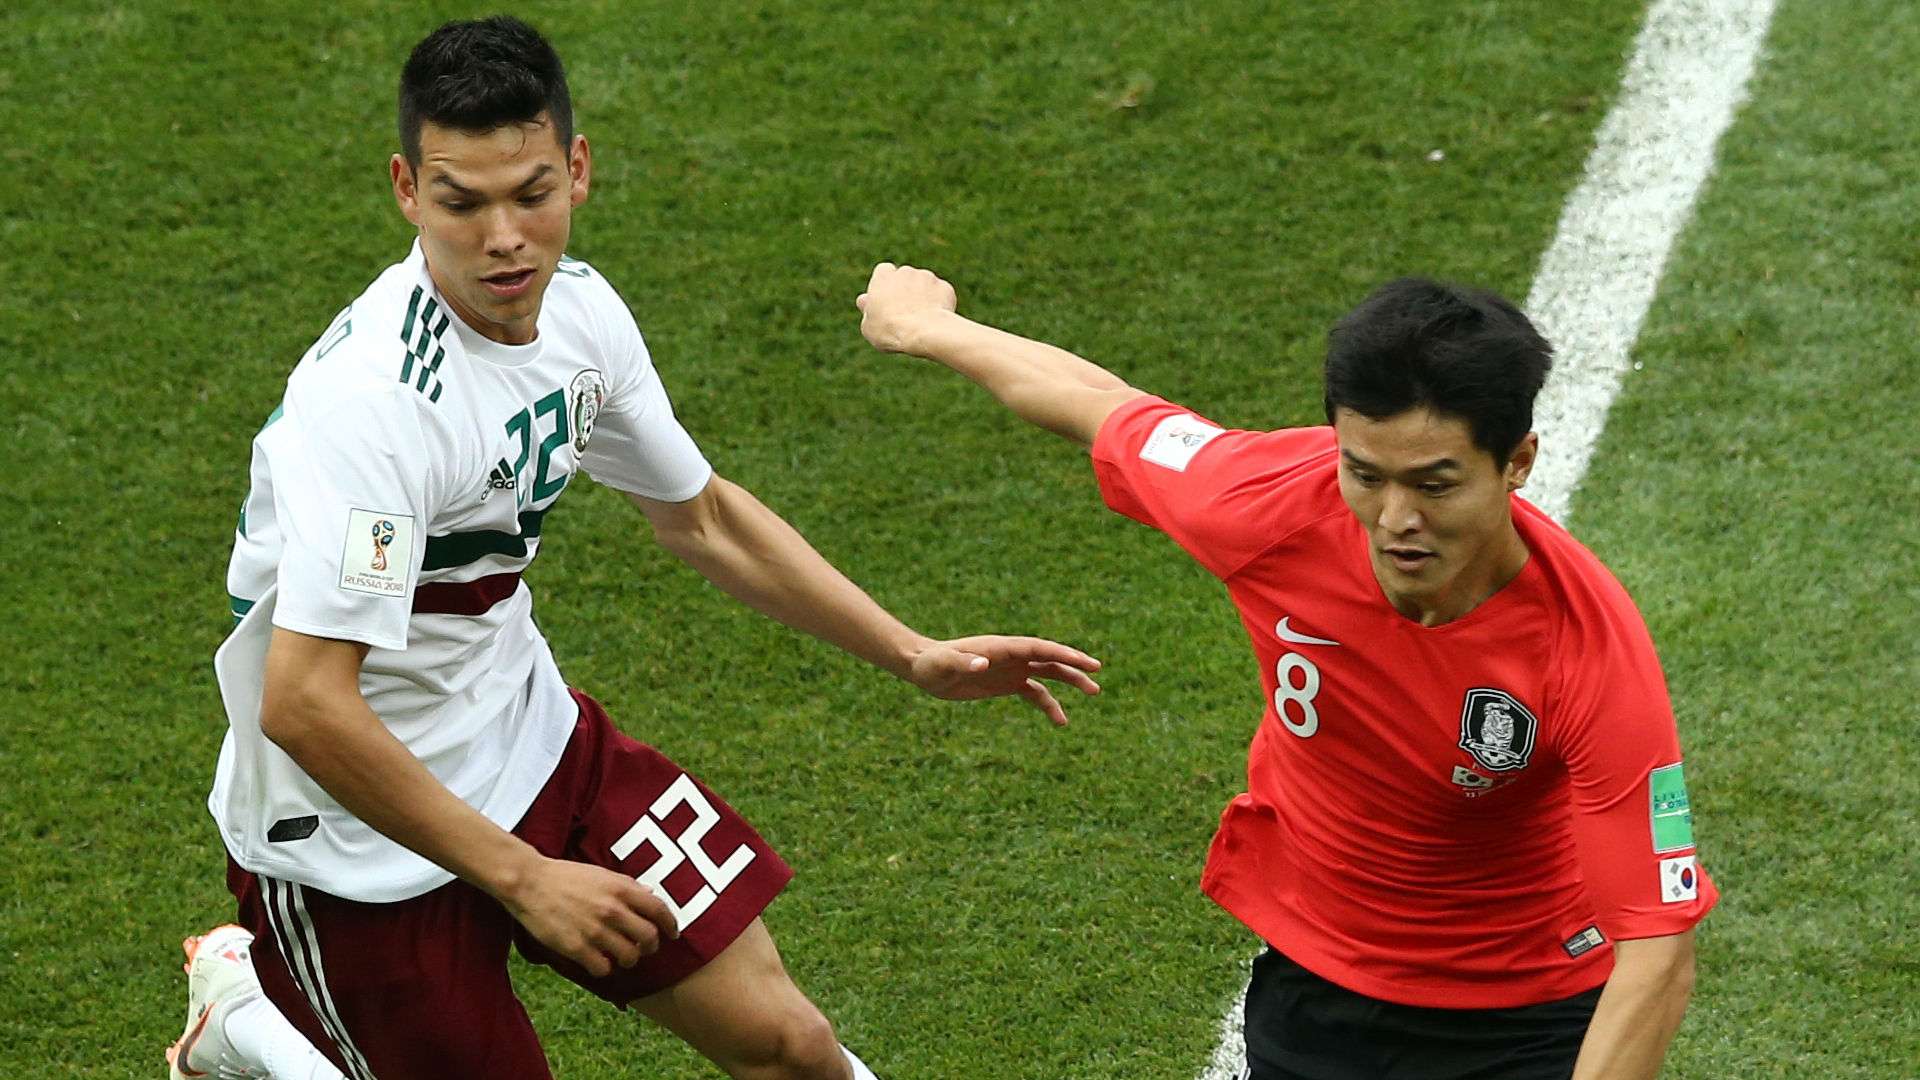 Ju Se-Jong Korea Hirving Lozano Mexico World Cup